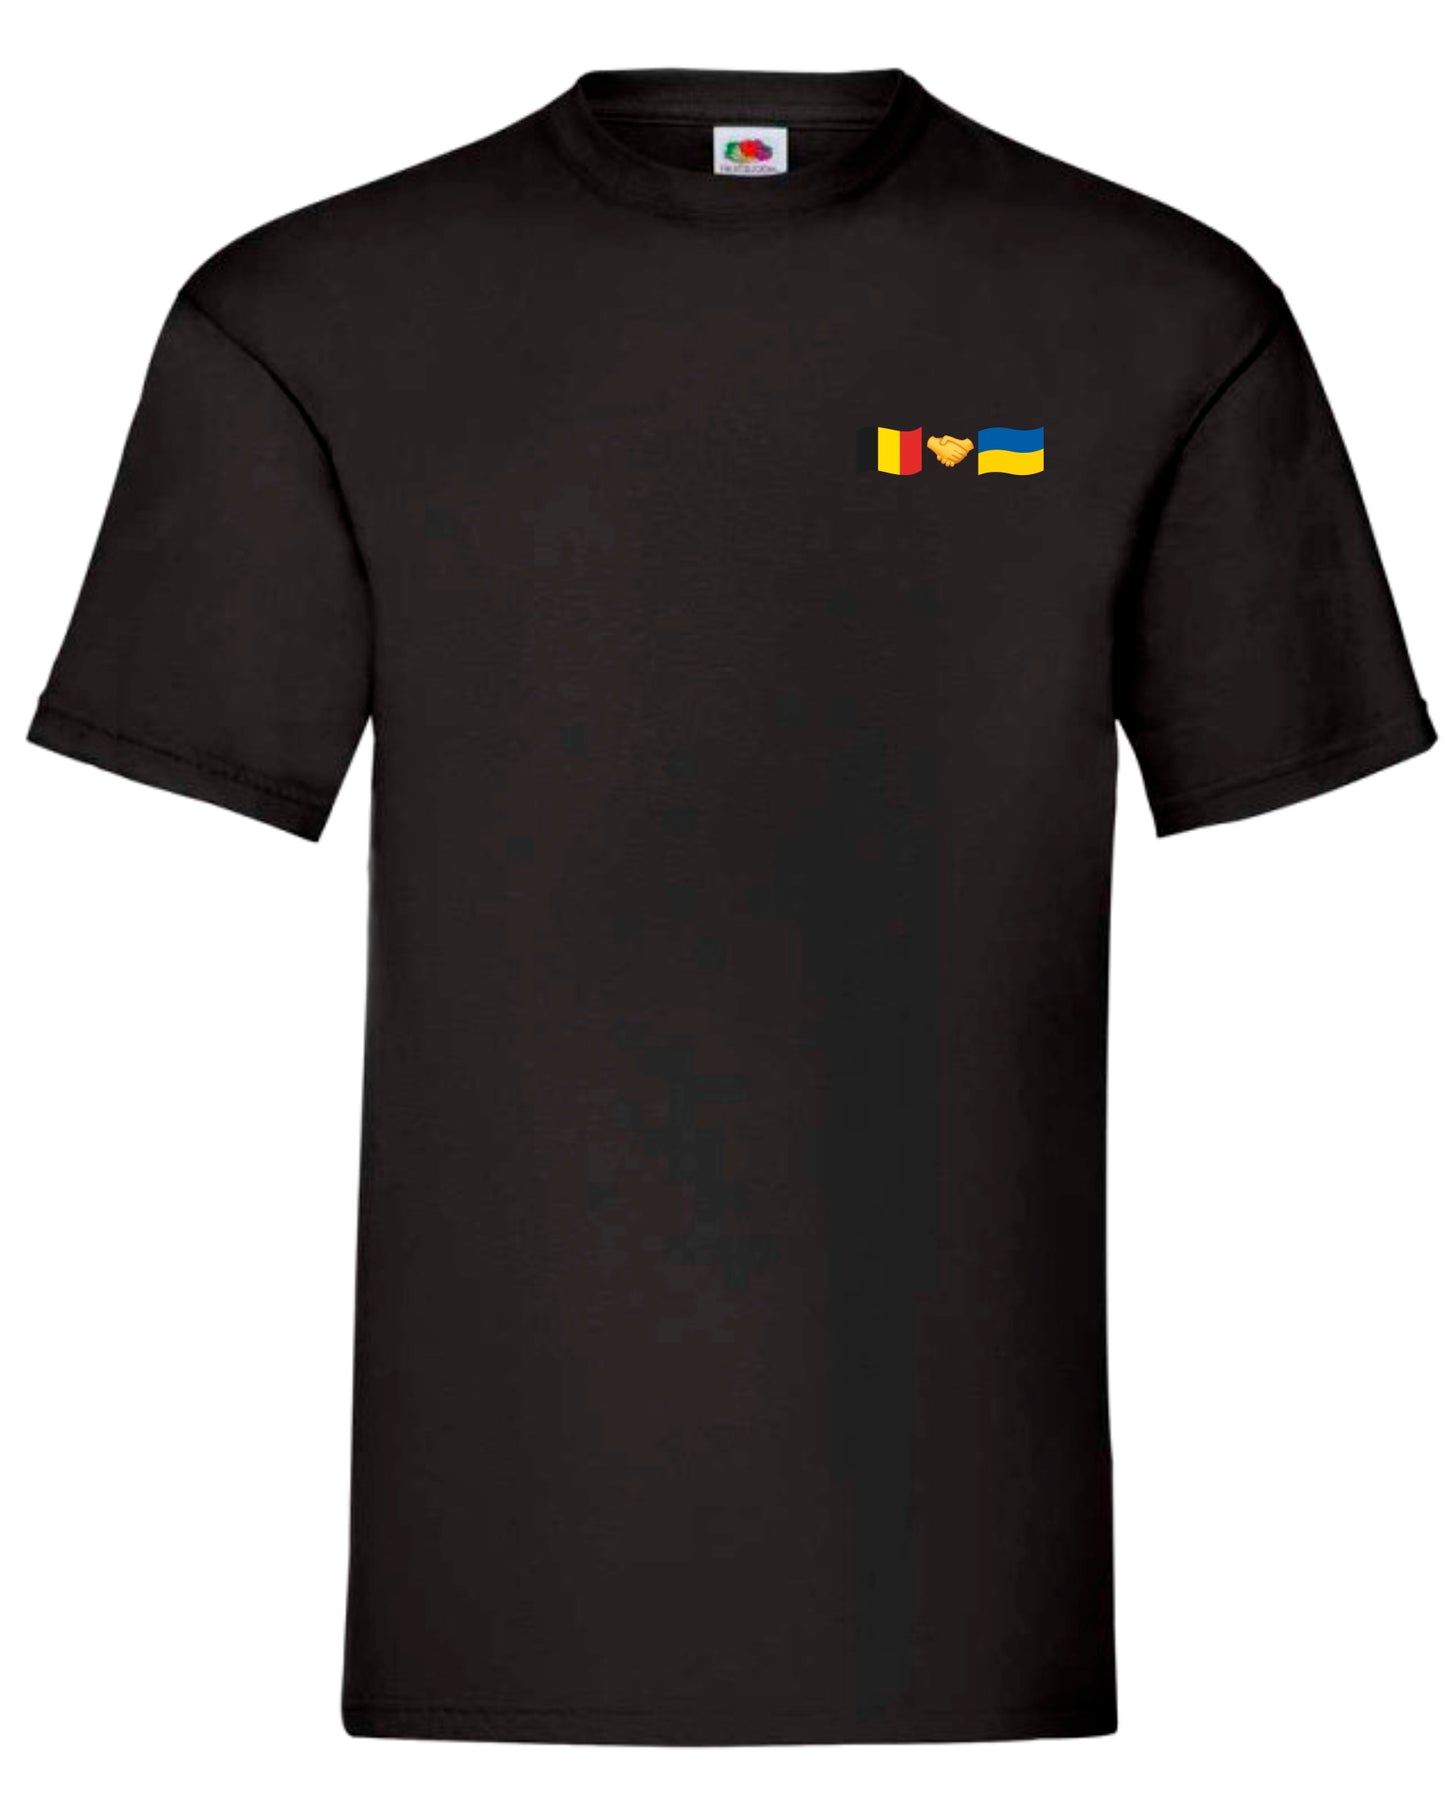 T-shirt Belgium + Ukraine (small logo)